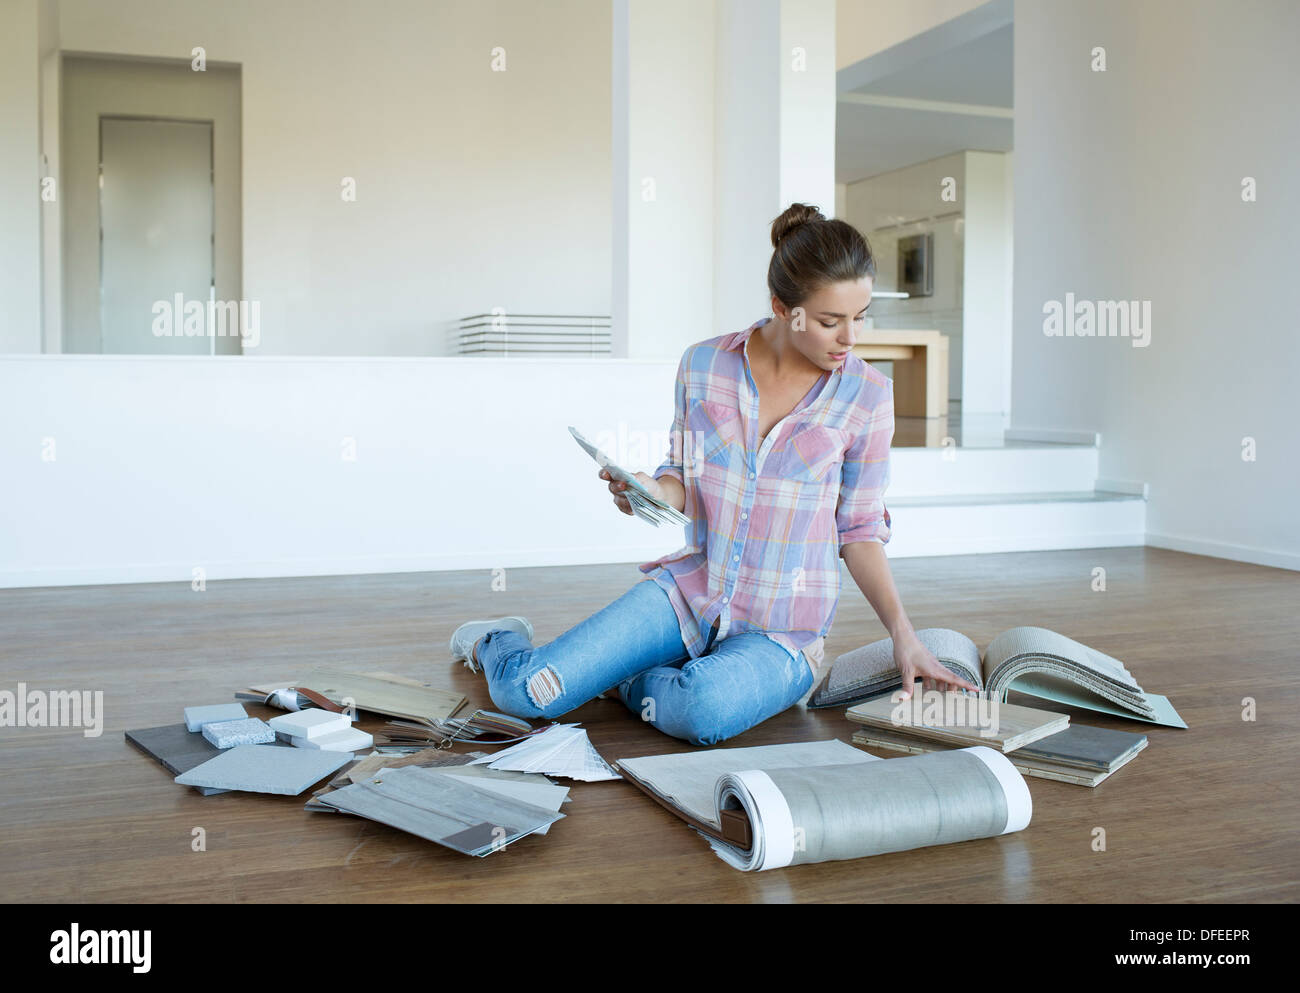 La donna la visualizzazione di moquette e campioni di piastrelle sul pavimento nella nuova casa Foto Stock